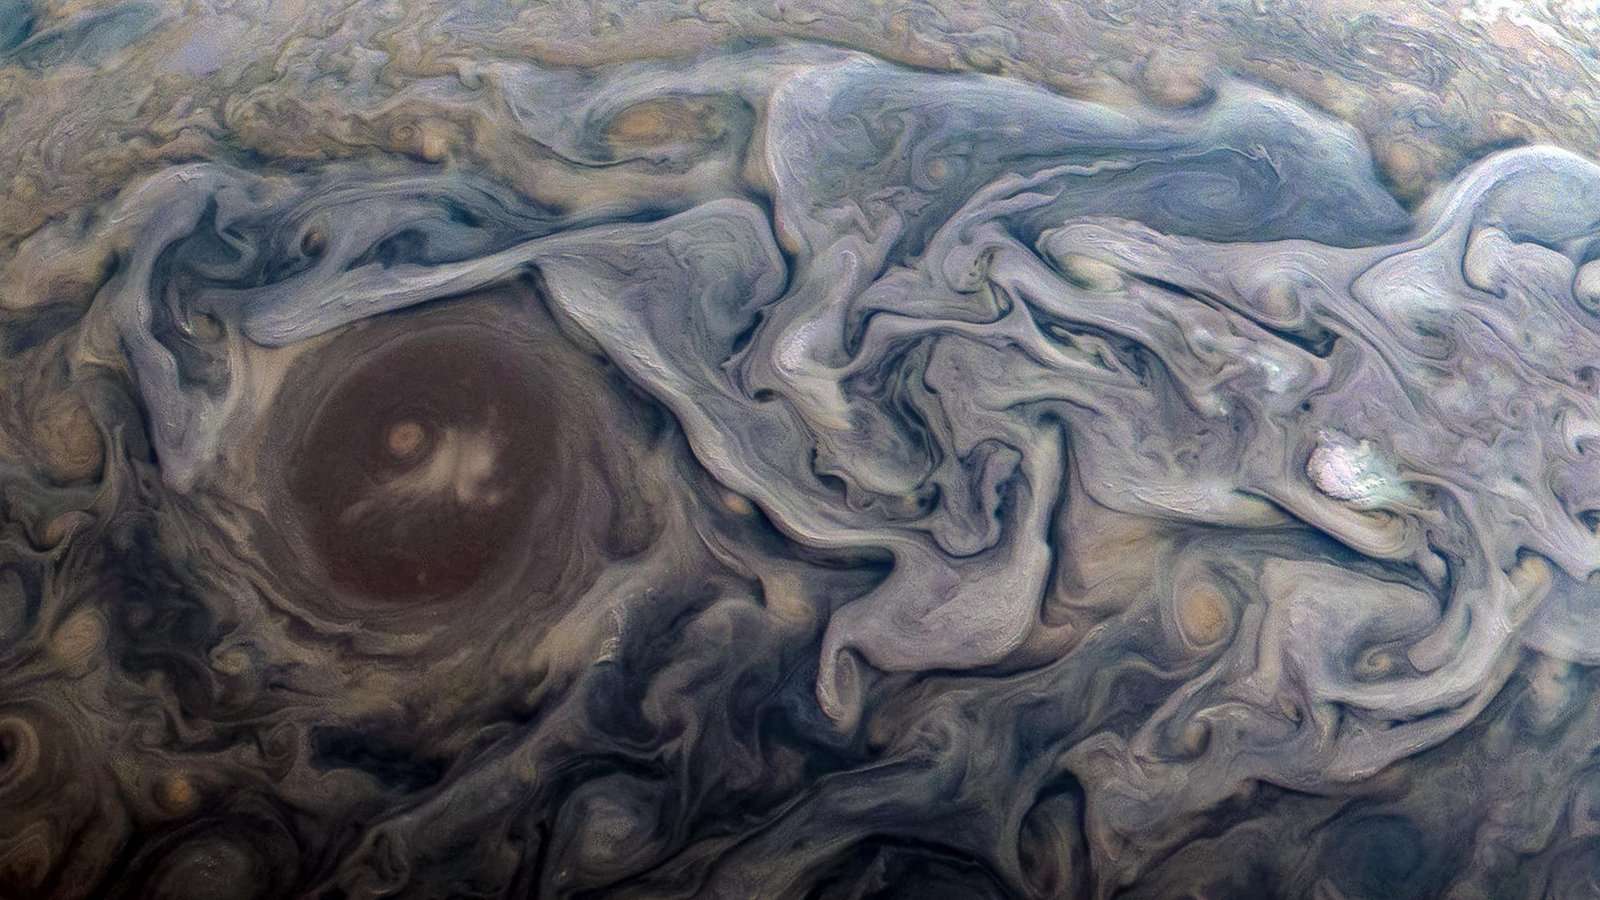 Características atmosféricas dramáticas, no Hemisfério Norte de Júpiter, são o destaque desta imagem feita pela sonda Juno, da NASA. A nova perspectiva mostra nuvens rodopiantes, que circundam uma estrutura circular, dentro de uma região de corrente de jato chamada “Jet N6”. Feito em fevereiro de 2019, o registro aconteceu enquanto a espaçonave realizava seu 18º sobrevôo próximo ao planeta gigante gasoso. Juno estava a cerca de 13 mil km do topo das nuvens do planeta, acima de uma latitude de aproximadamente 55 graus ao Norte